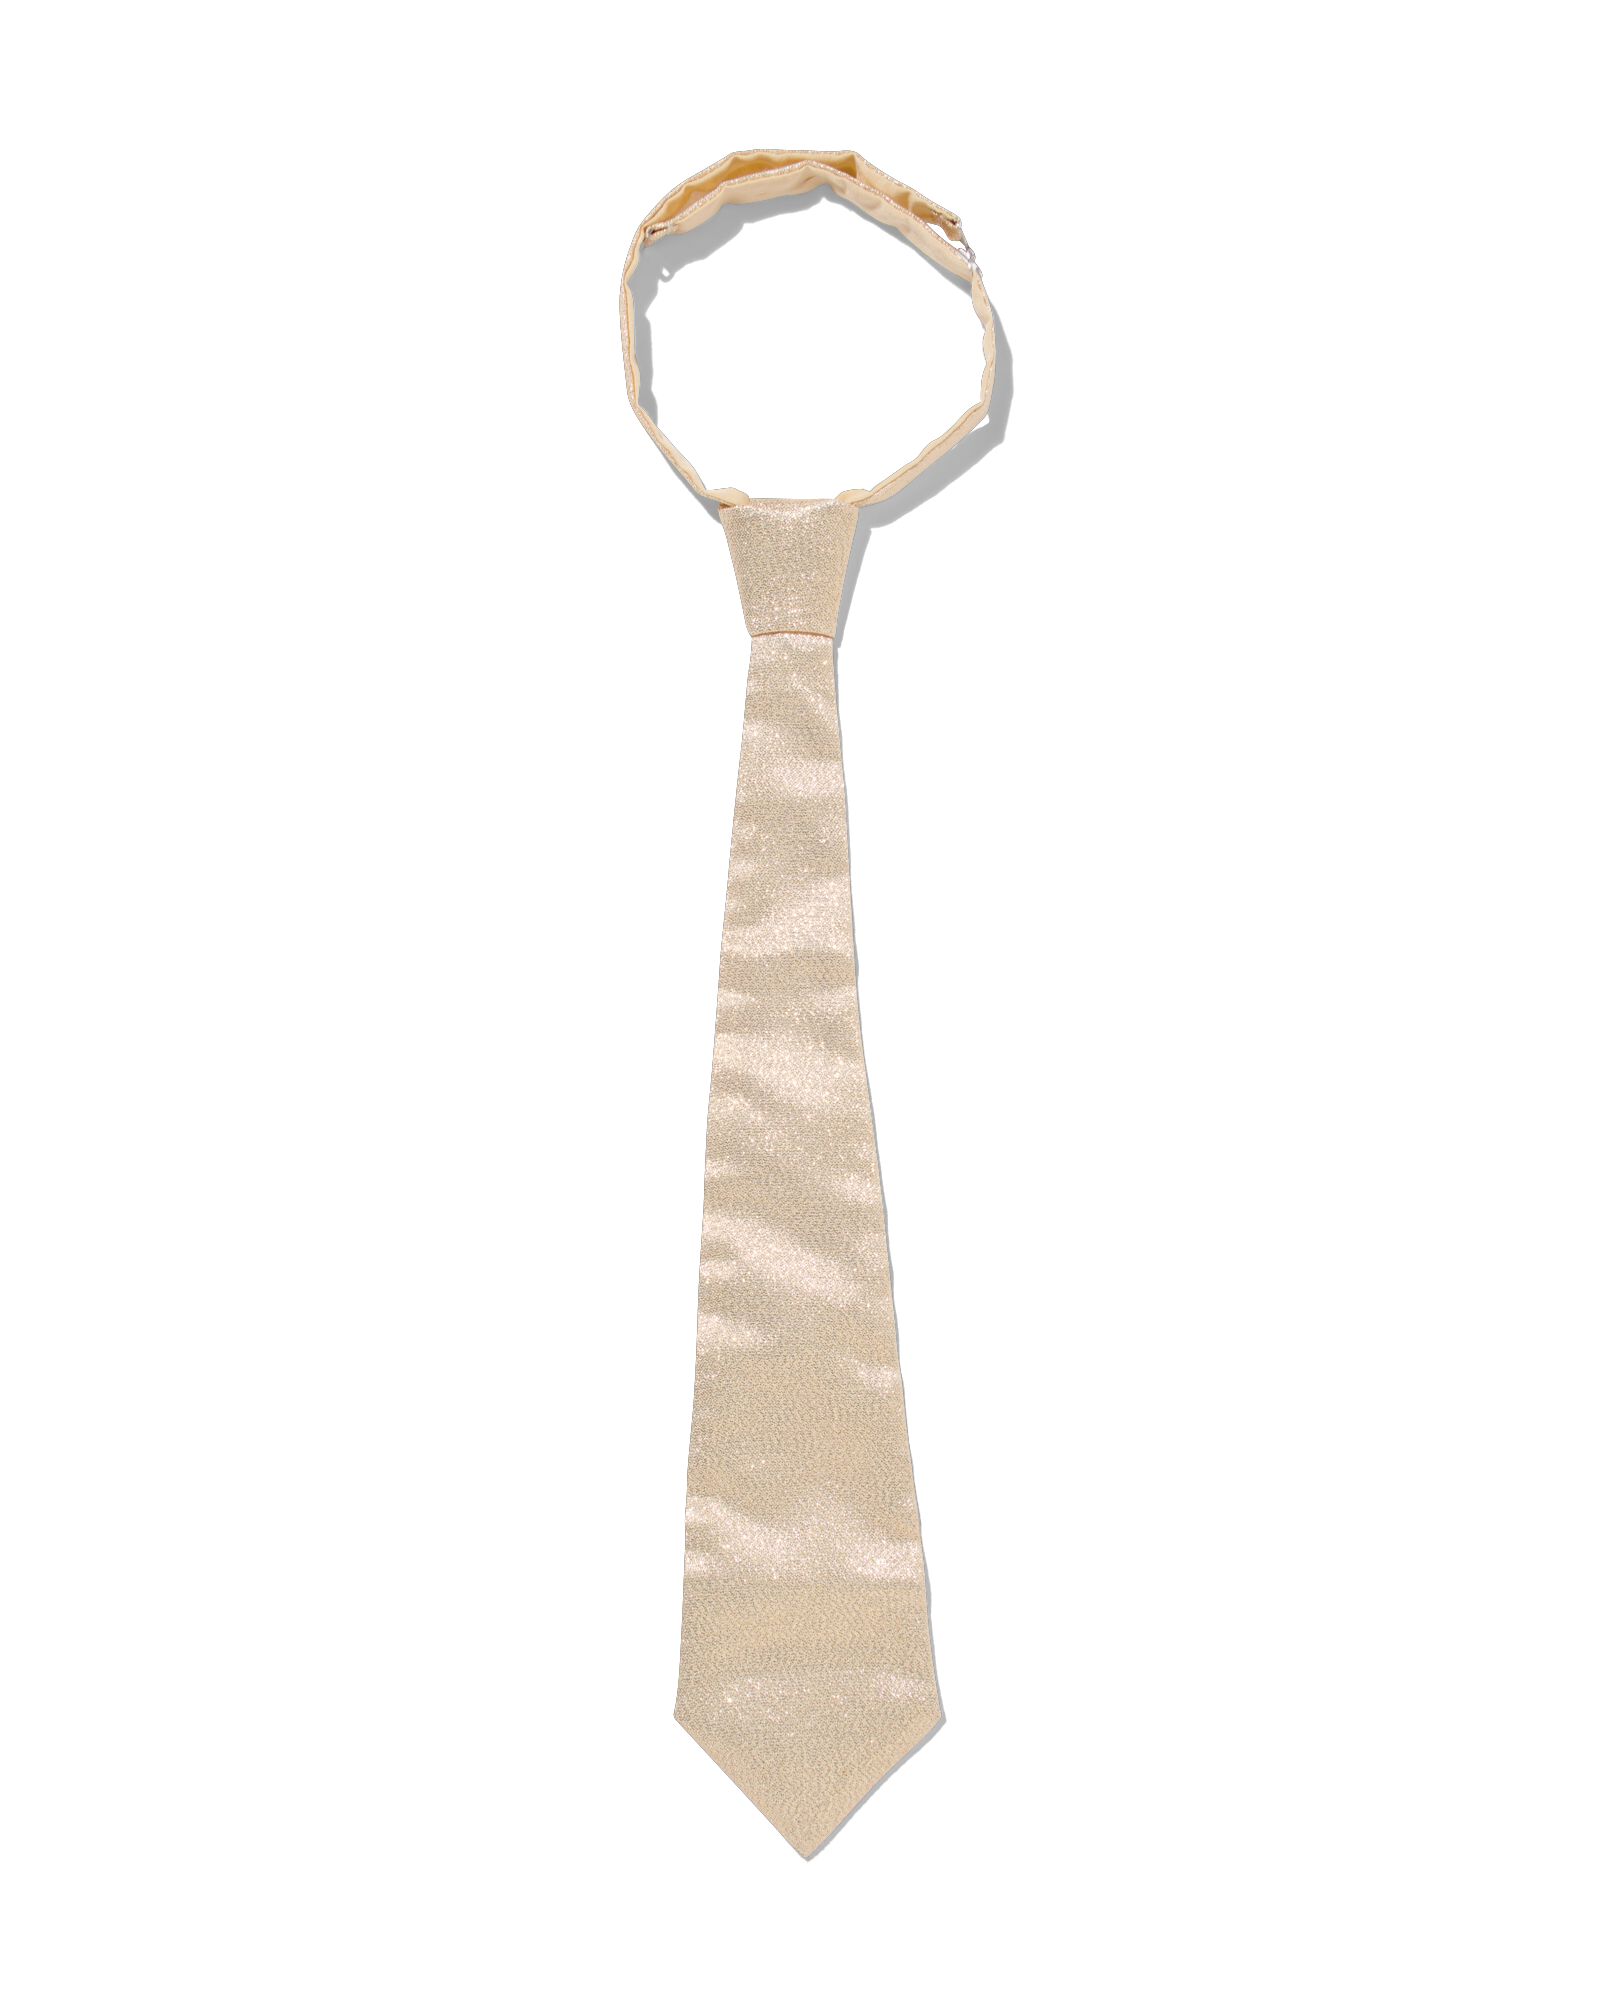 Cravate Paillette Blanche - Cravate Strass Soirée - Cravate